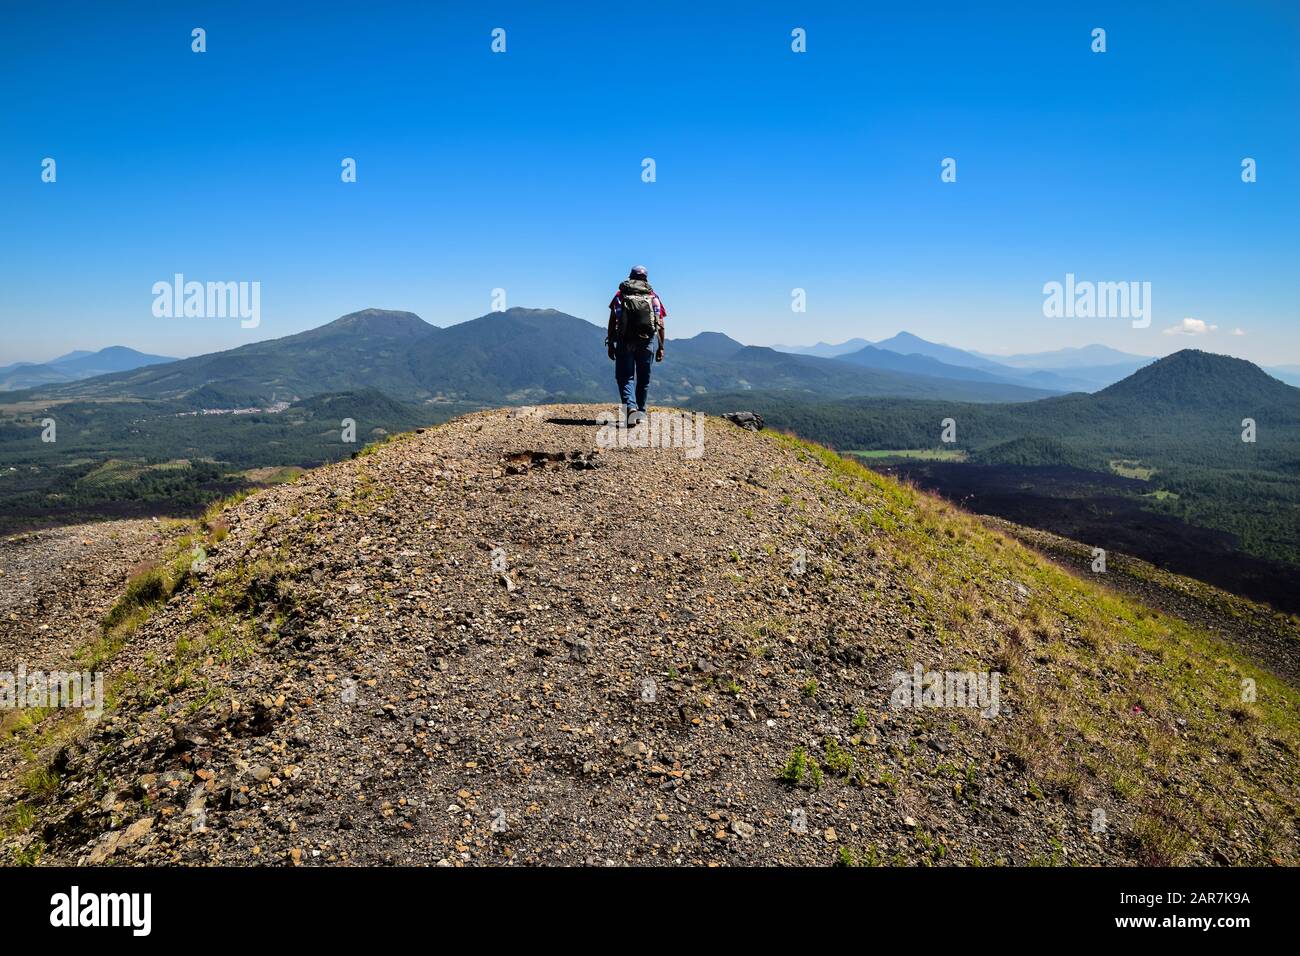 Man walking to the top of a ridge of a volcano caldera in a mountainous landscape, Paricutin, Mexico Stock Photo